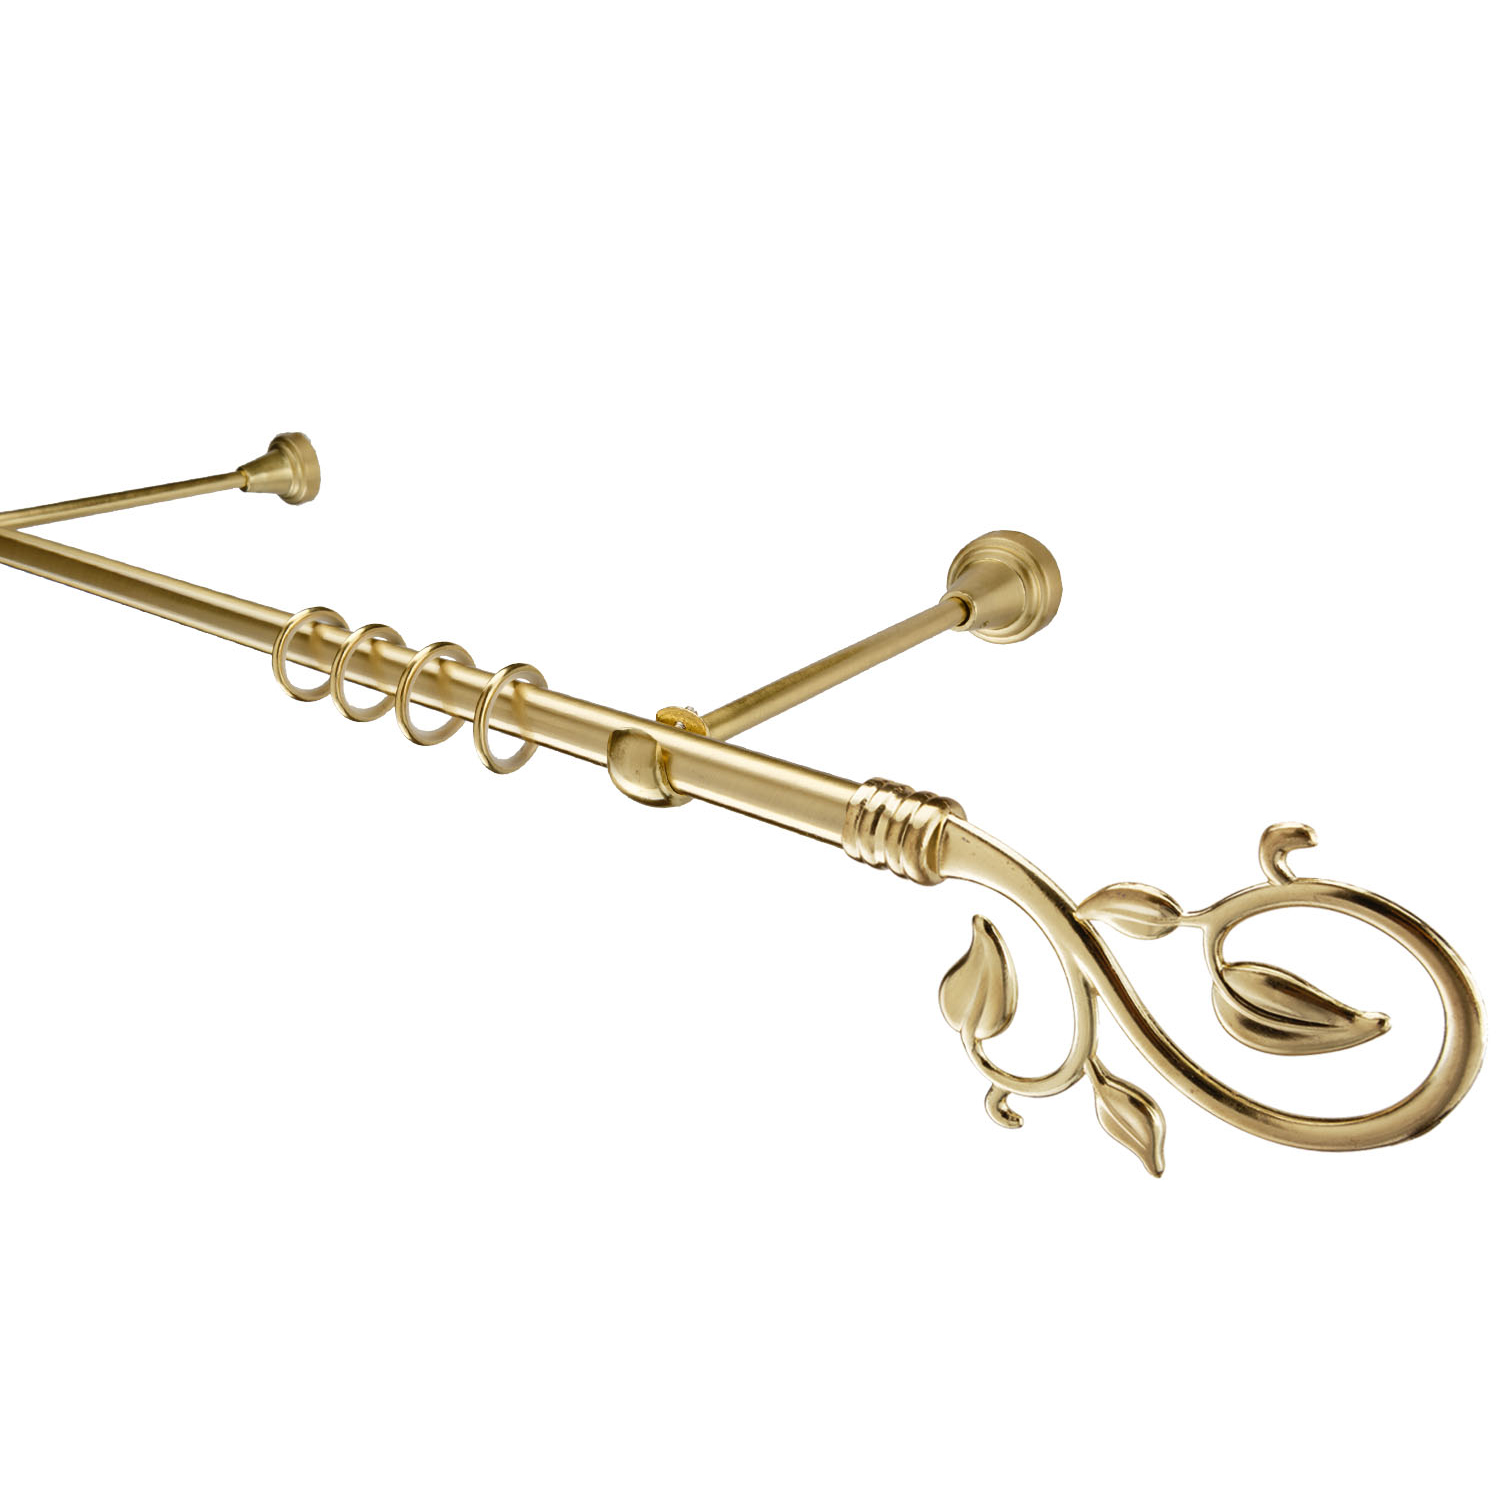 Металлический карниз для штор Амели, однорядный 16 мм, золото, гладкая штанга, длина 160 см - фото Wikidecor.ru